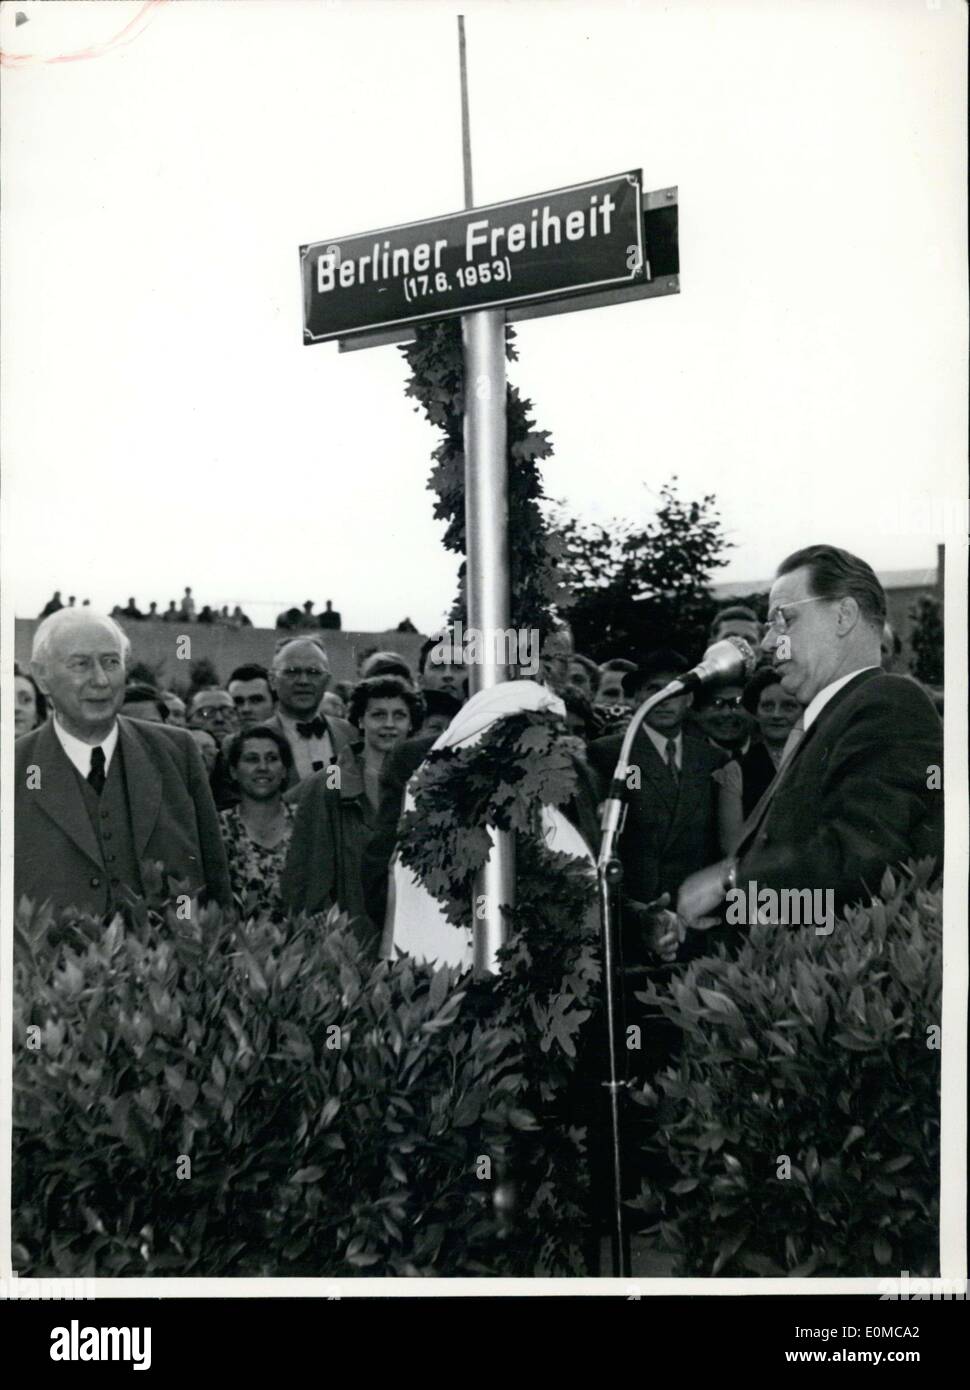 16. Juni 1954 - '' Berliner Freiheit''(Berlin Freedom) in Bonn. Zahlreiche Bonner zeigte sich auf den Tag der deutschen Einheit als Bonn, dass Bürgermeister Peter Busen(right) enthüllt eine Straße namens '' Berliner Freiheit''. Federal President Prof. Heuss(left) wurde die Teilnahme an der Veranstaltung. Stockfoto